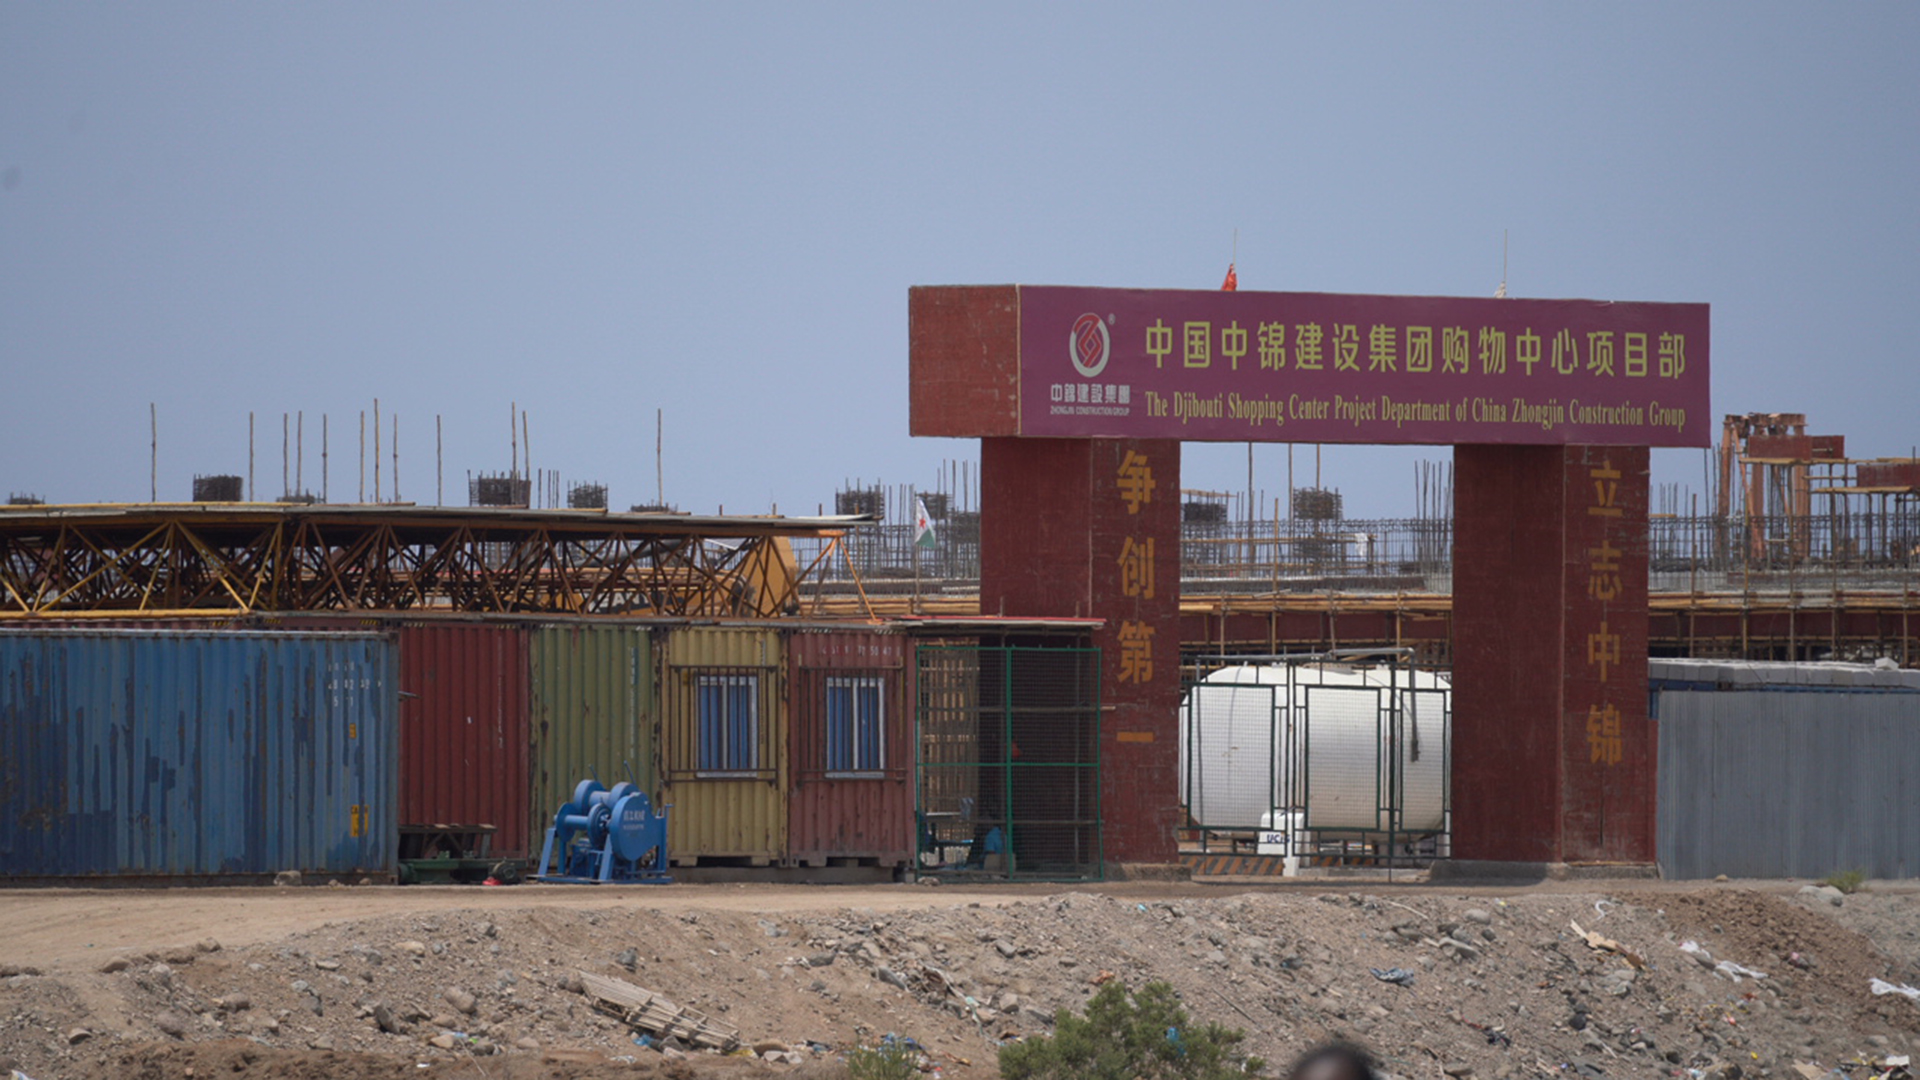 Baustelle eines chinesischen Einkaufszentrums in Dschibuti | Norbert Hahn